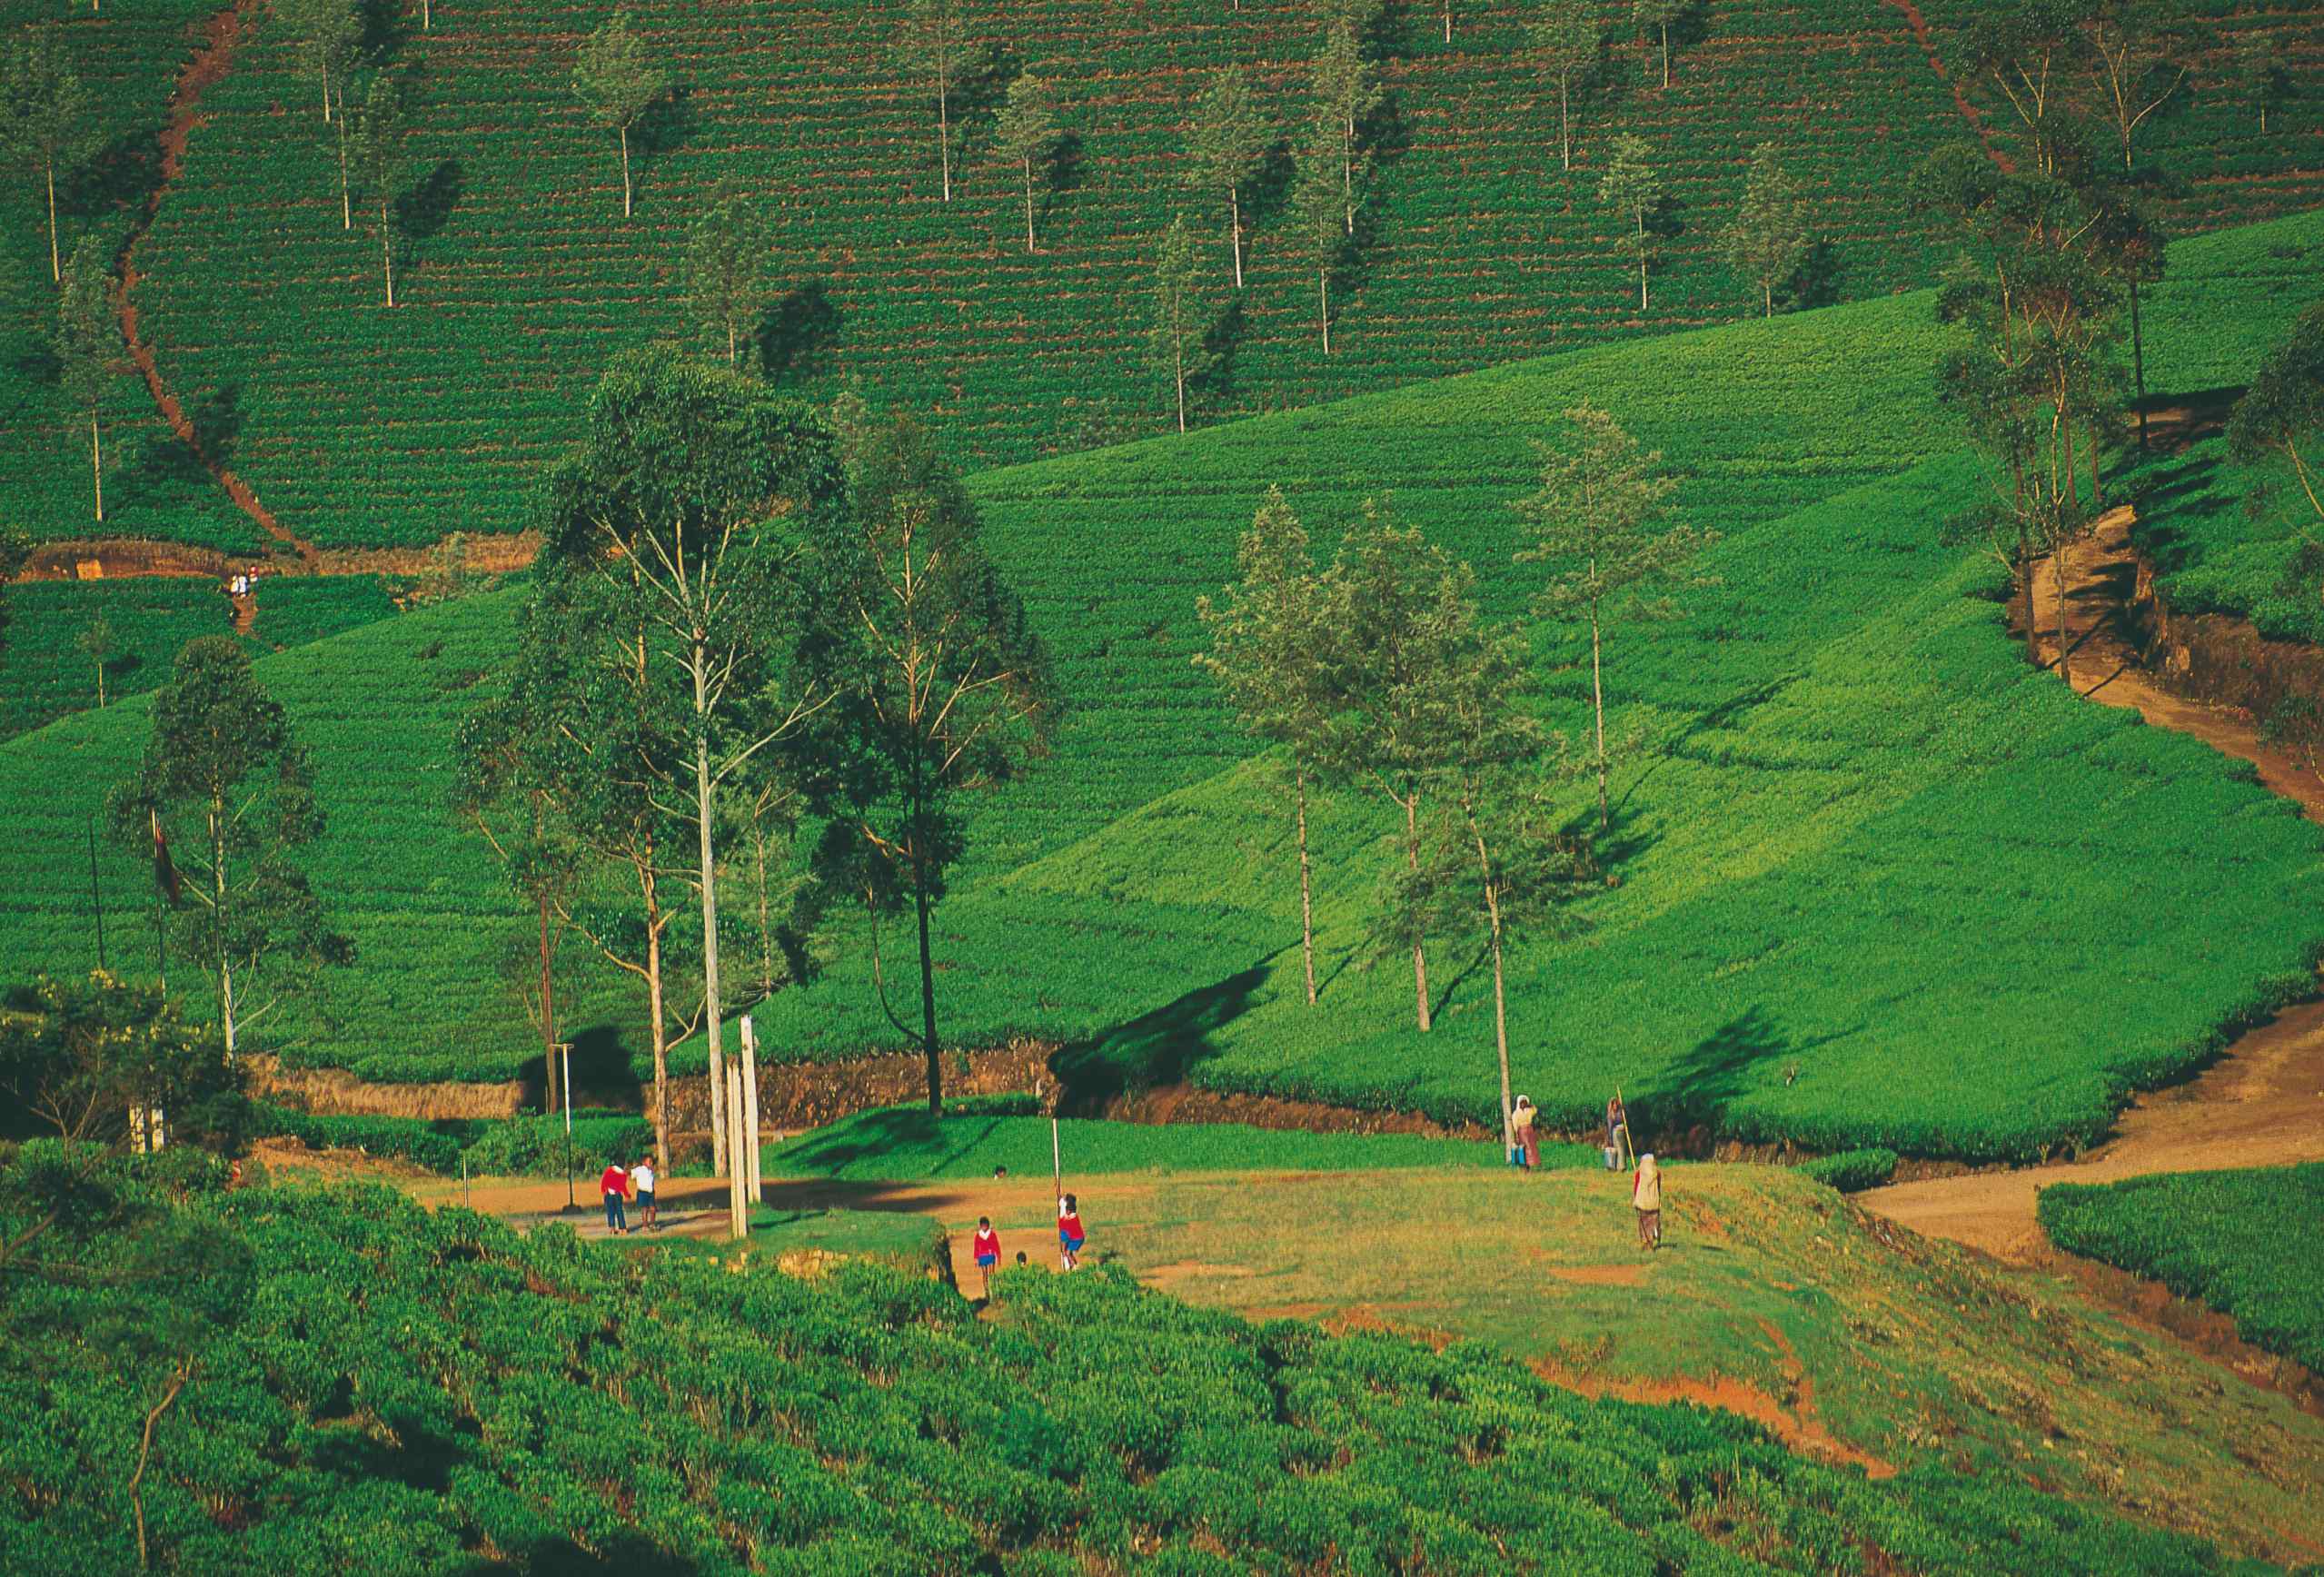 Plantations de thé